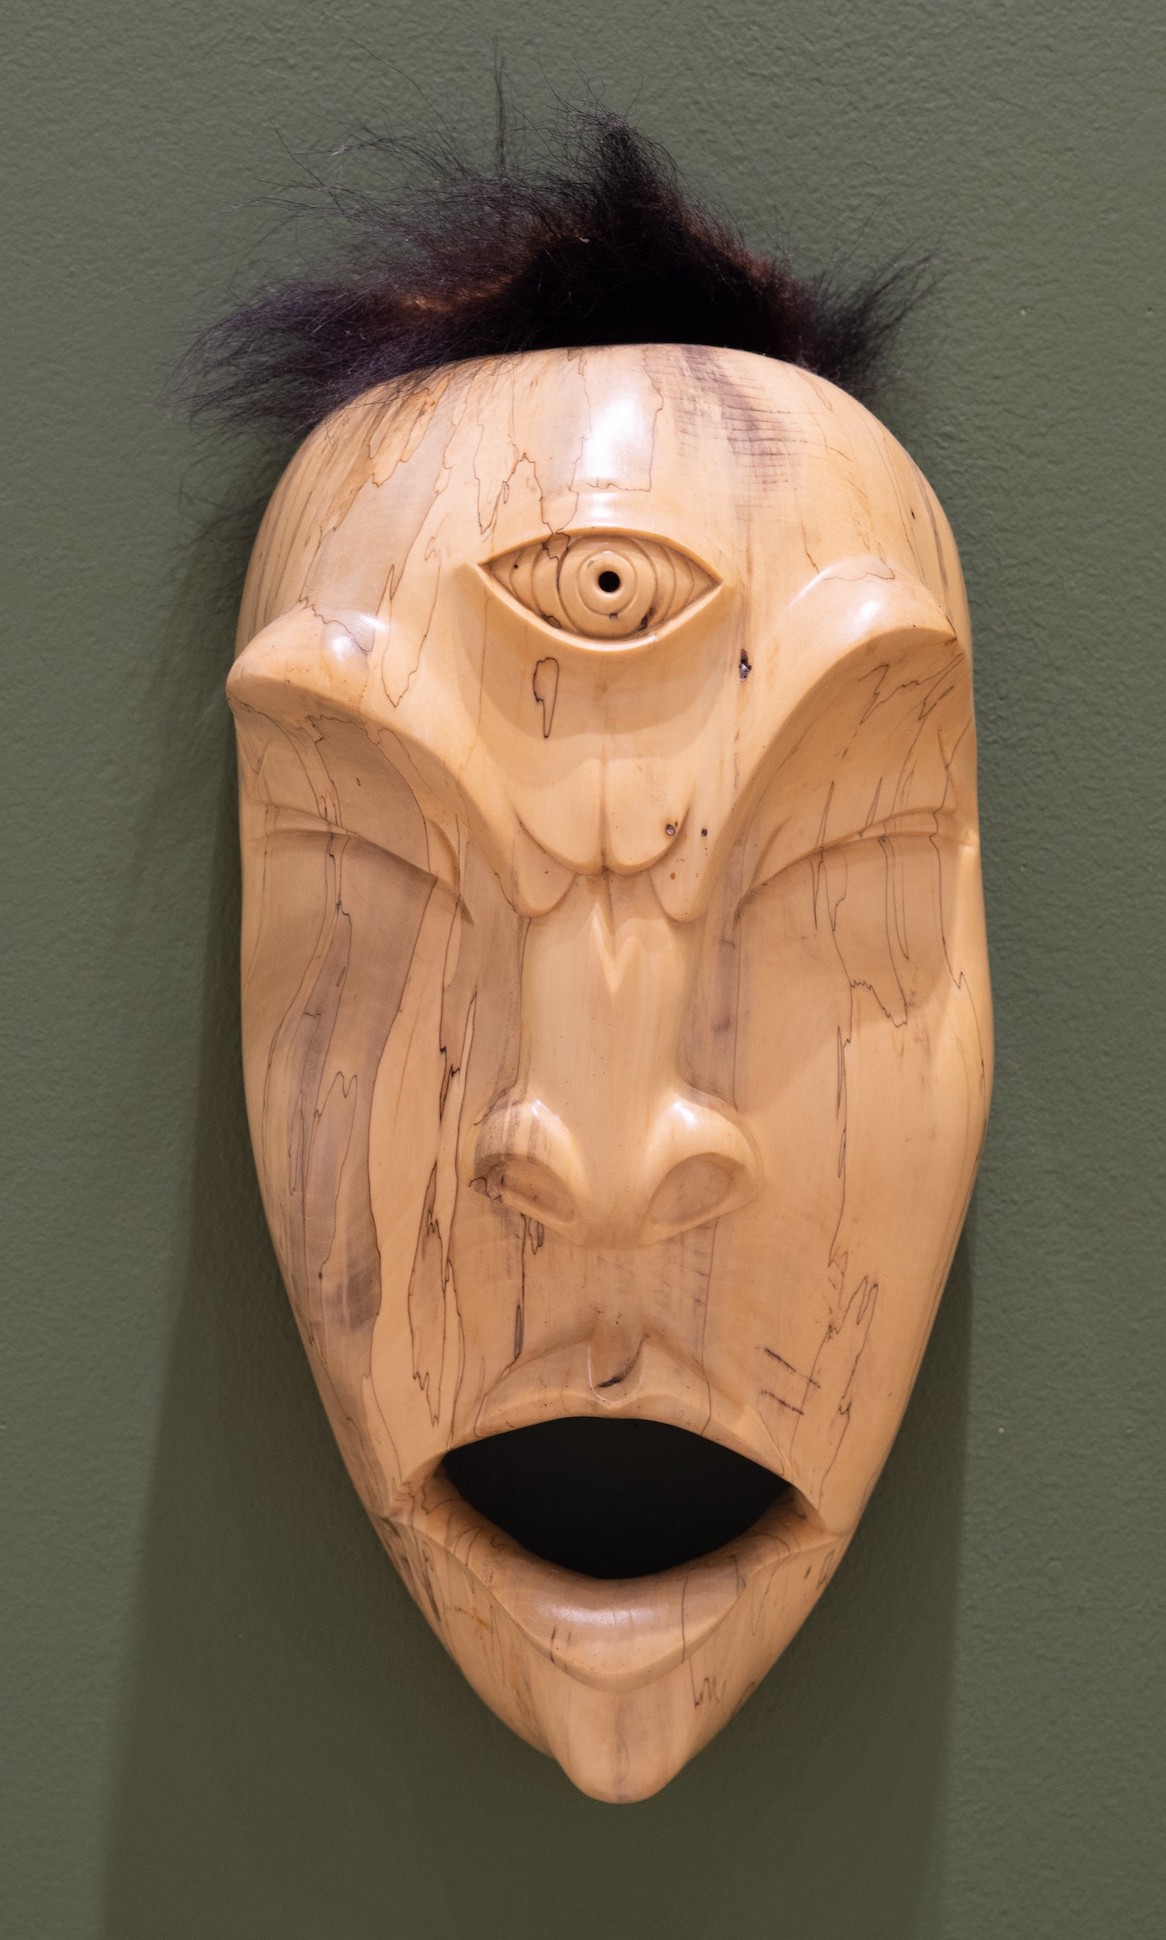 Slant Eyed Giant mask by Joshua Adams